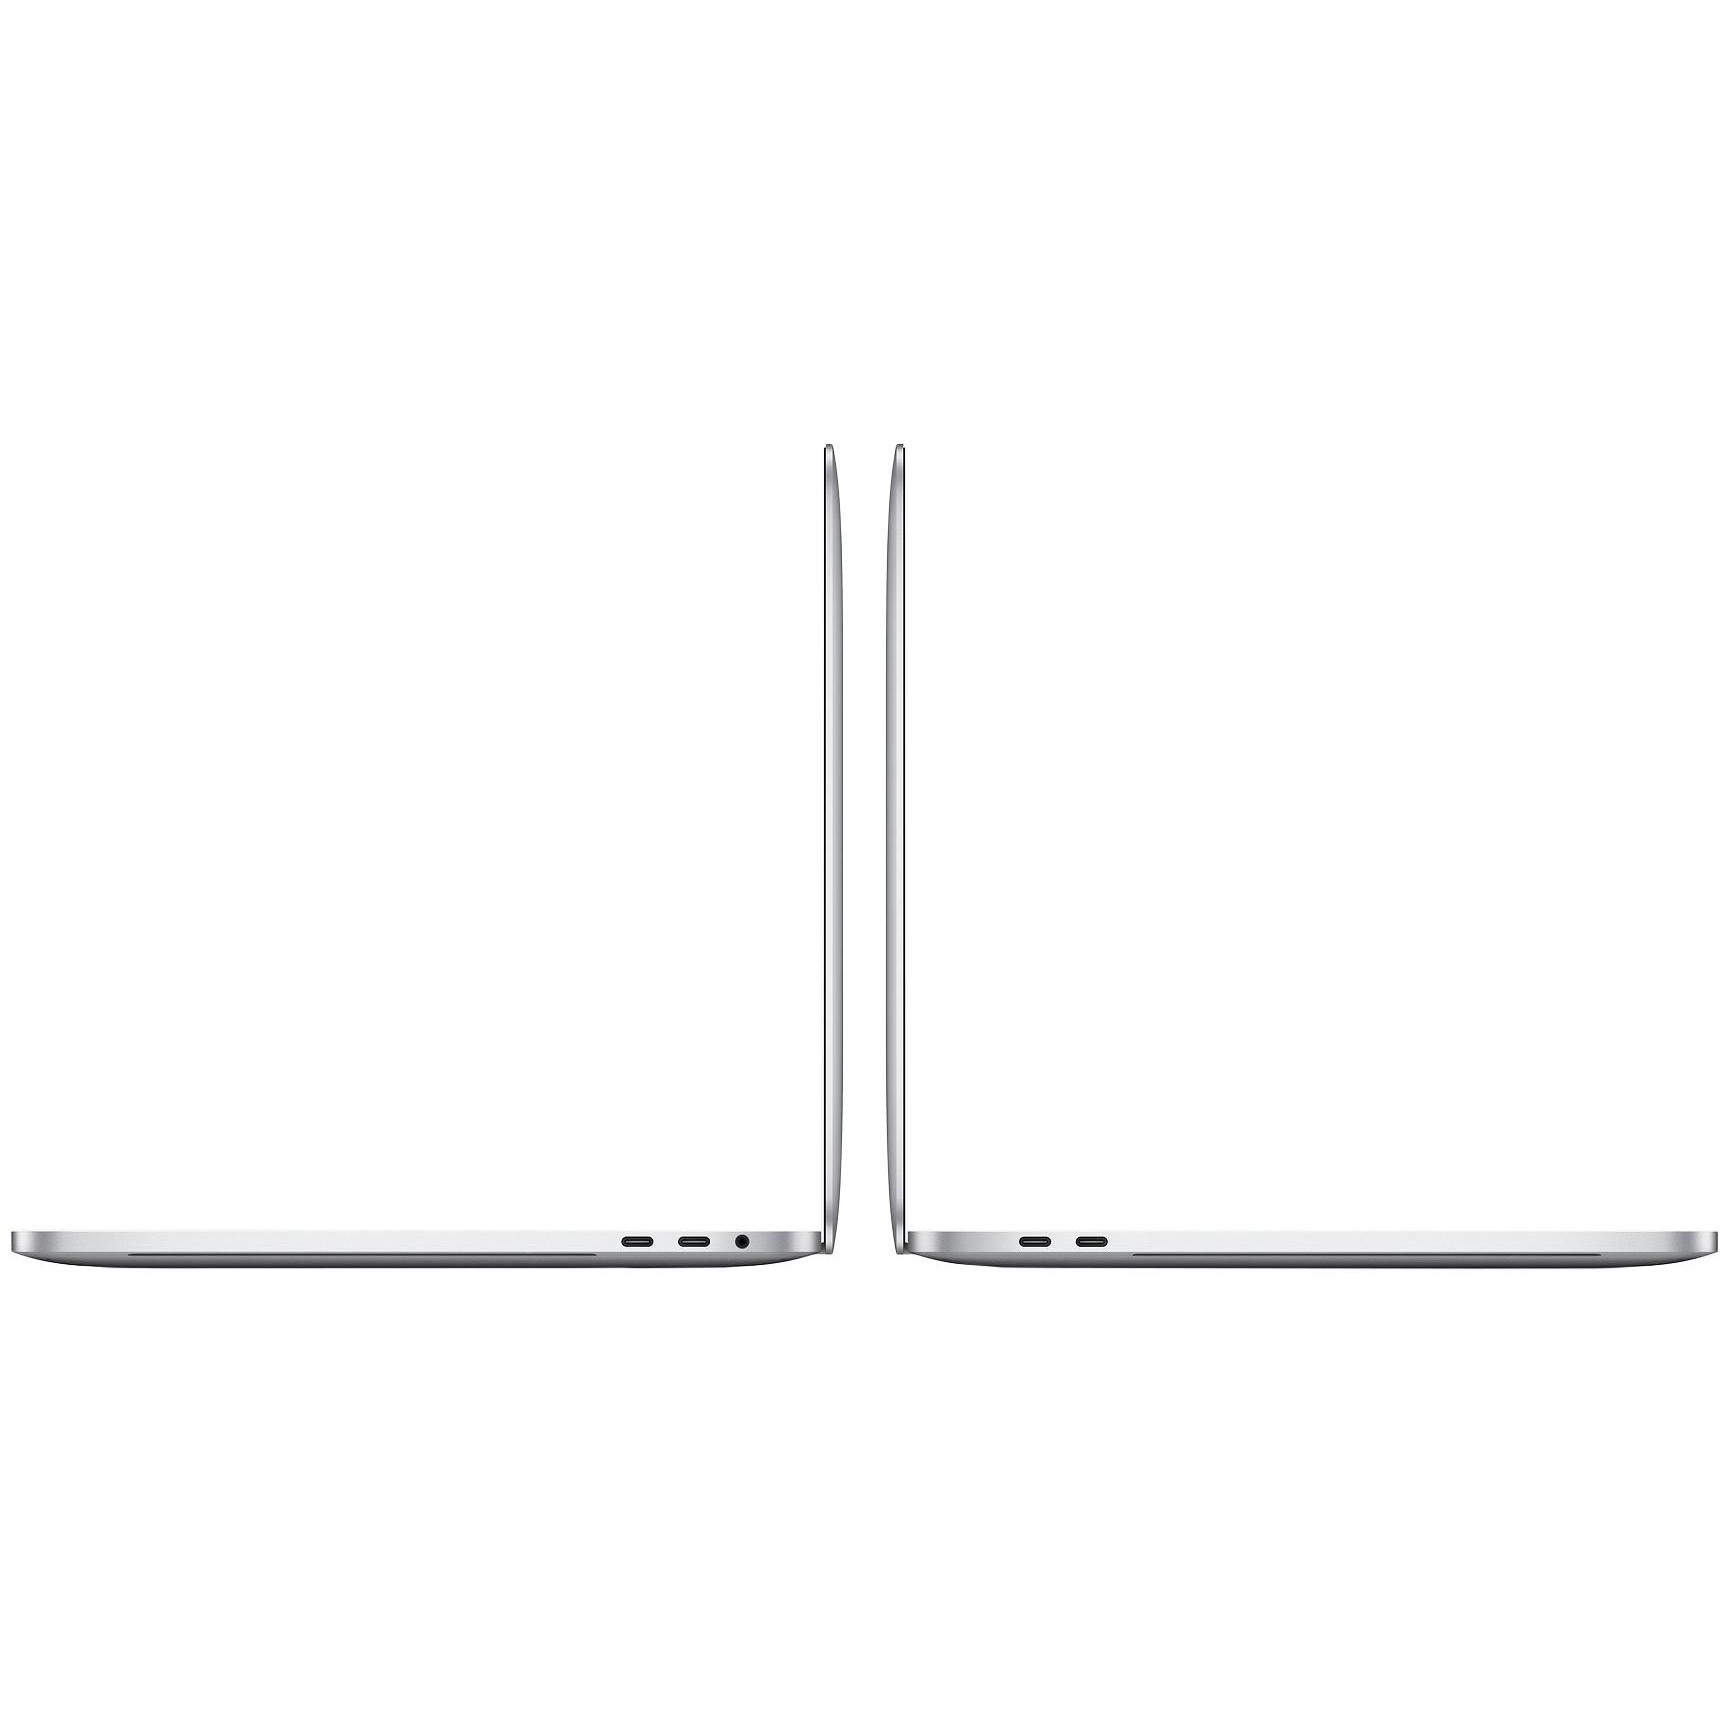  لپ تاپ 13 اینچی اپل مدل MacBook Pro MXK62 2020 همراه با تاچ بار 